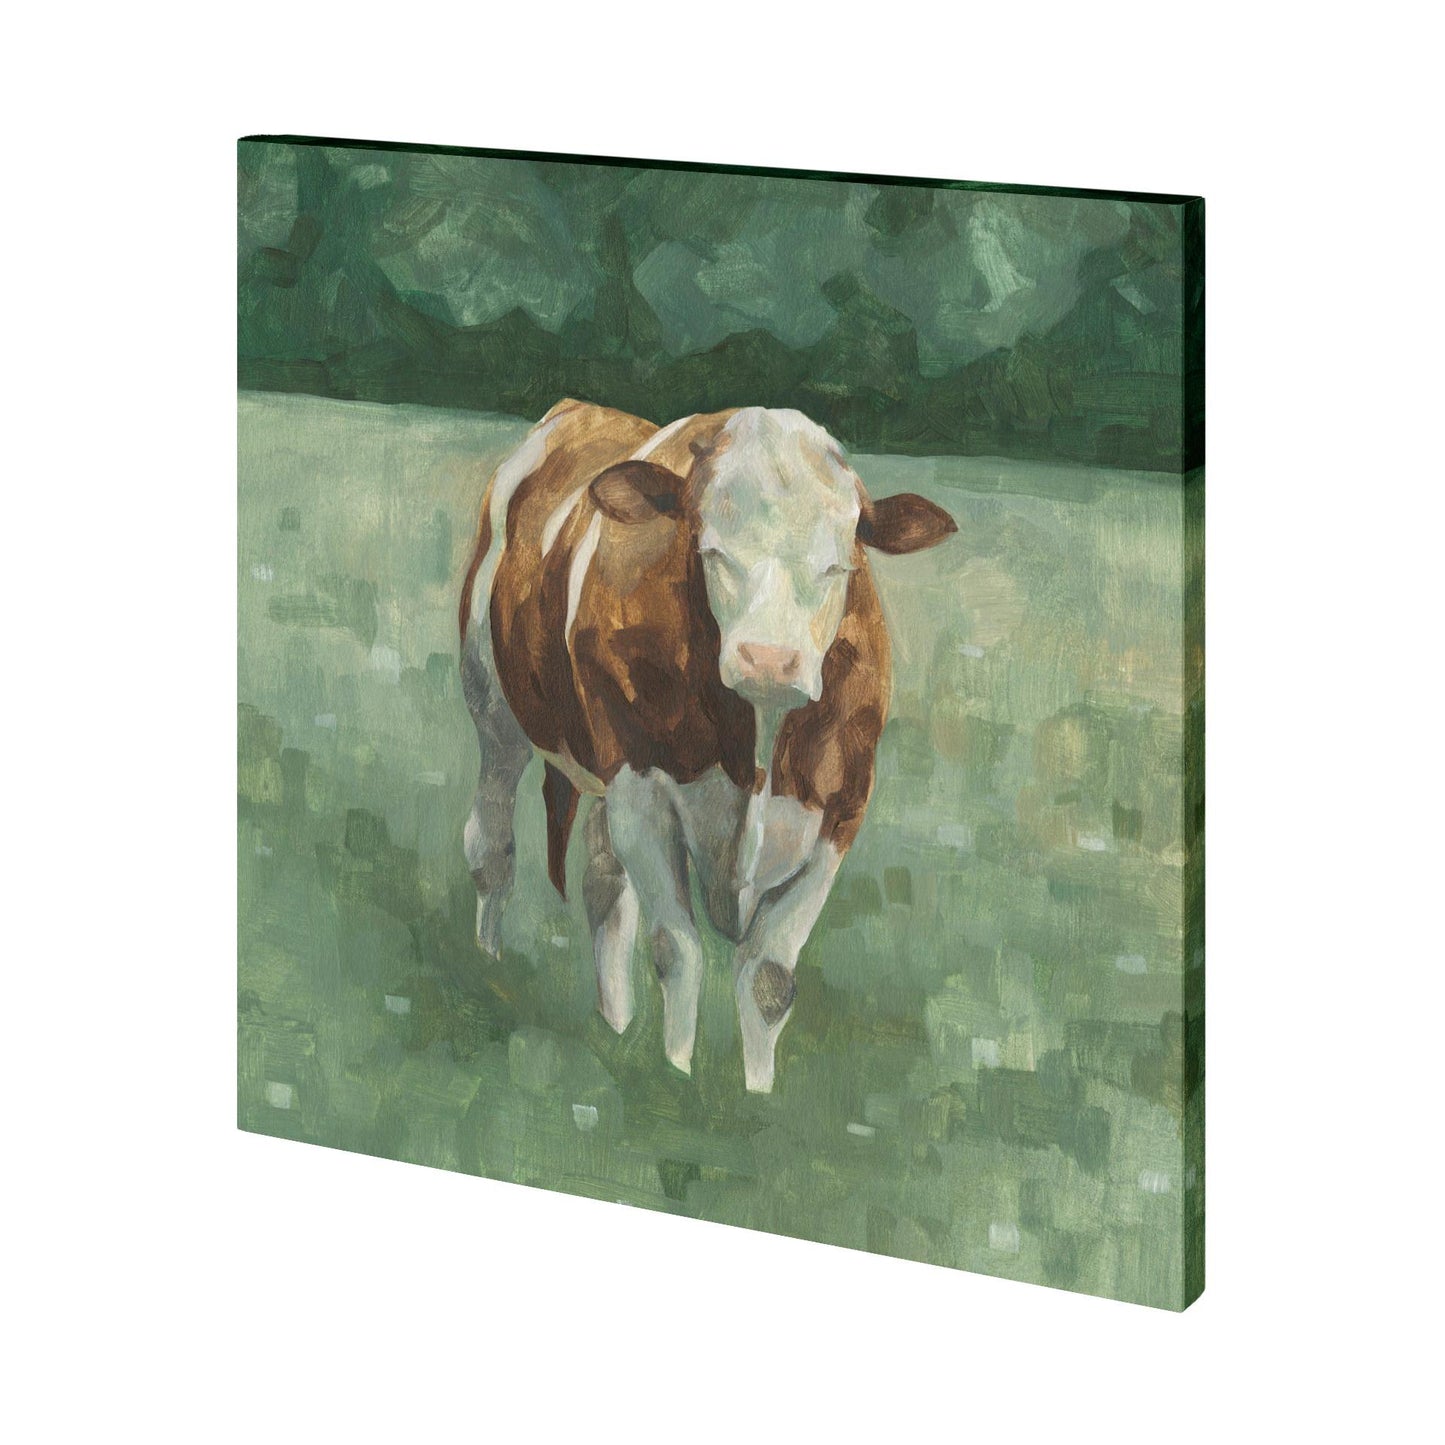 Hereford Cattle II (30 x 30)